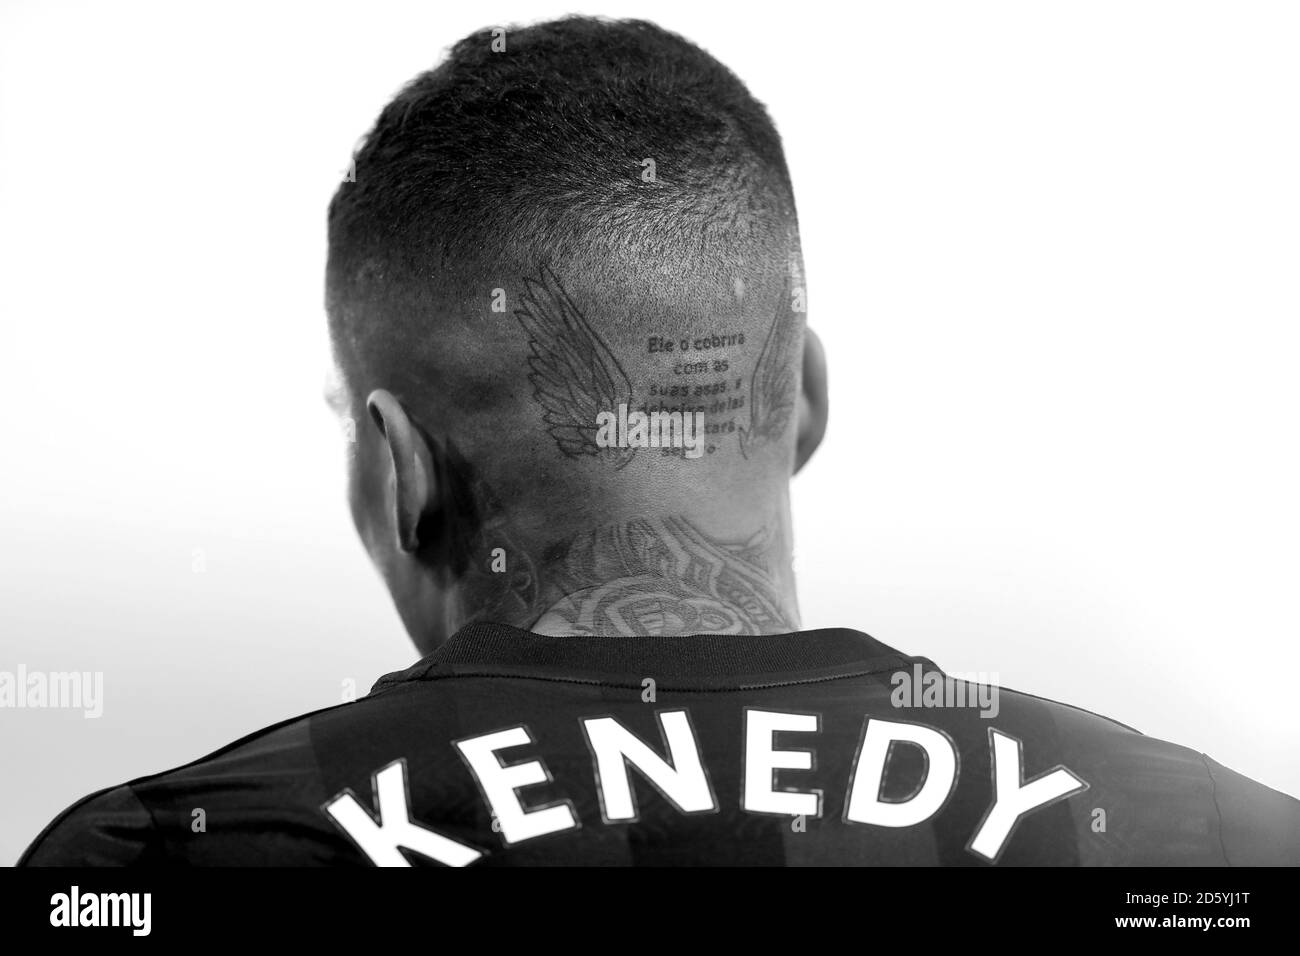 Une vue générale des tatouages de Kennedy de Newcastle (image convertie en noir et blanc) Banque D'Images